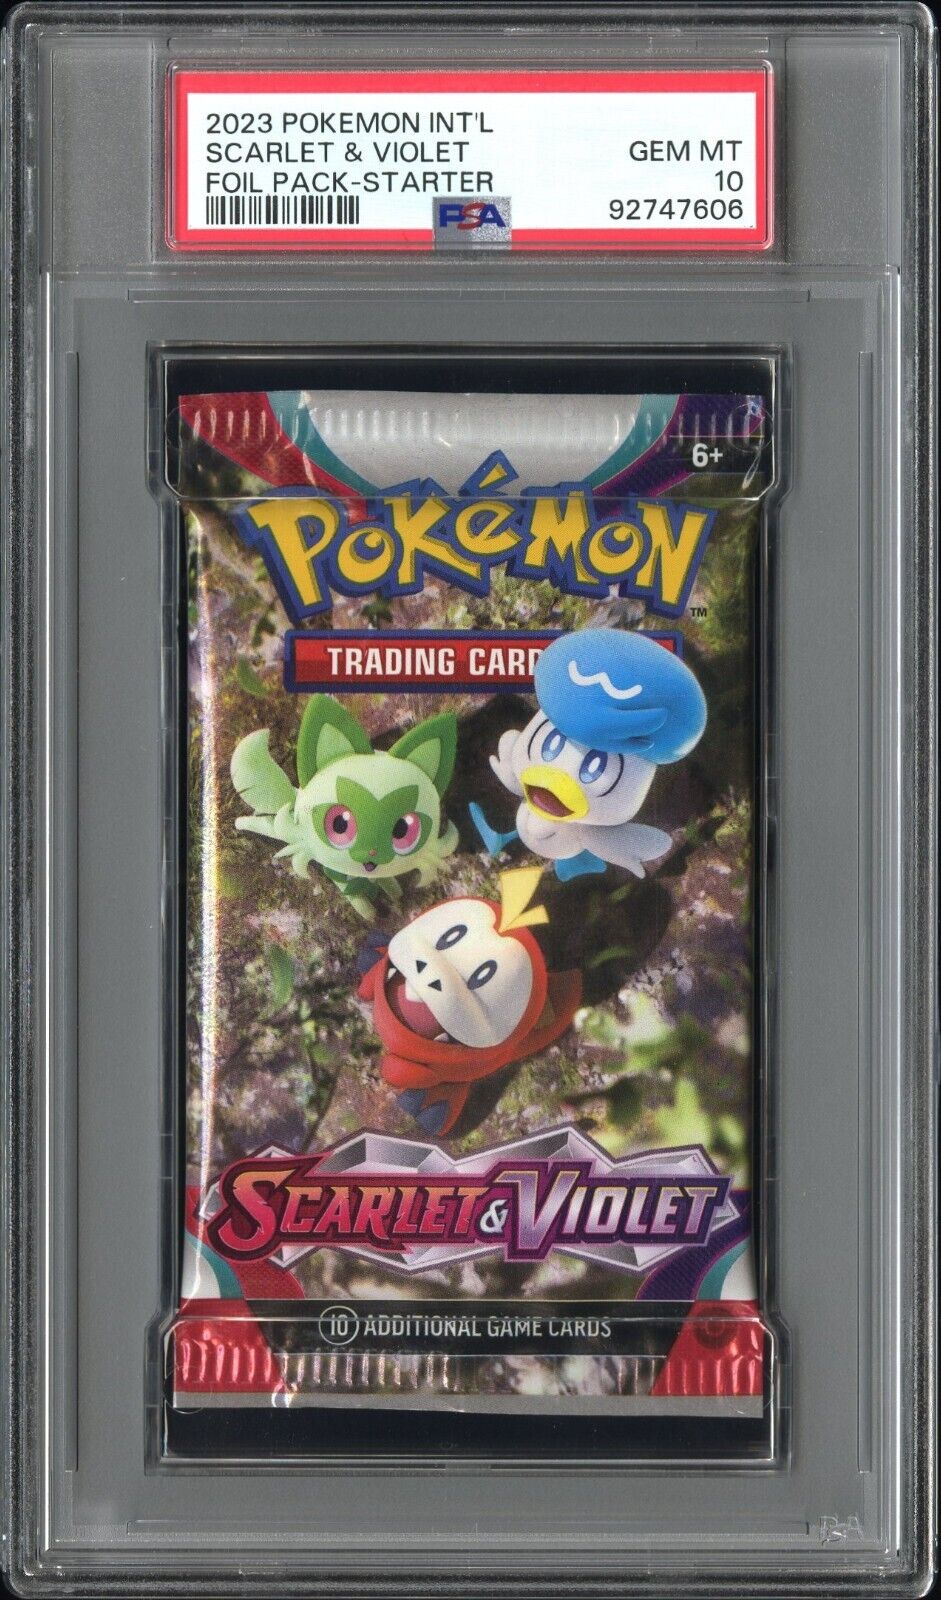 2023 Pokemon Scarlet & Violet Starter Foil / Booster Pack GEM MINT PSA 10